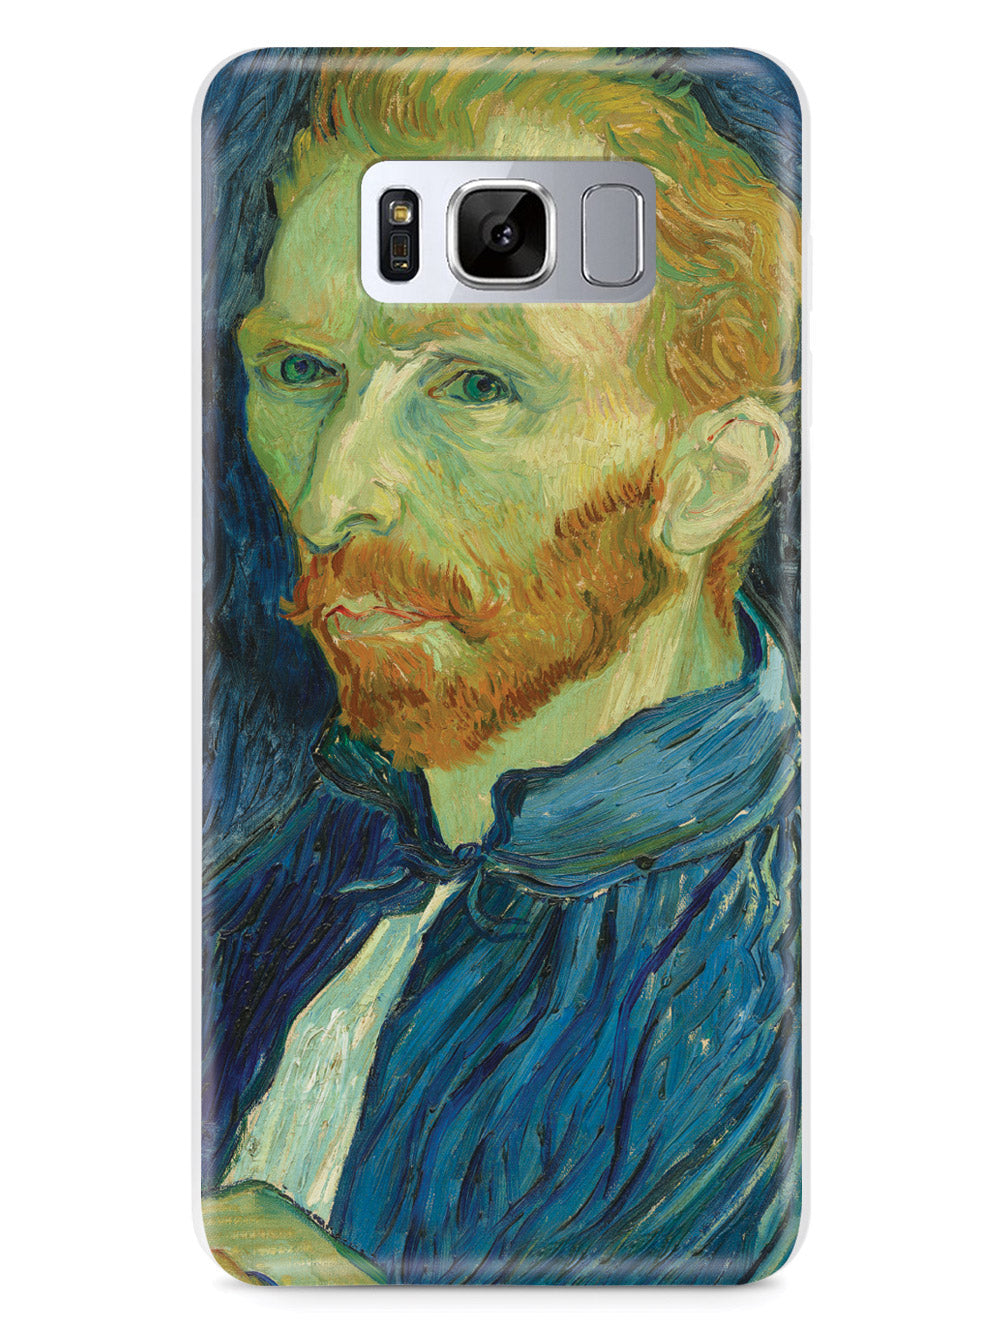 Vincent van Gogh Self-Portrait Case